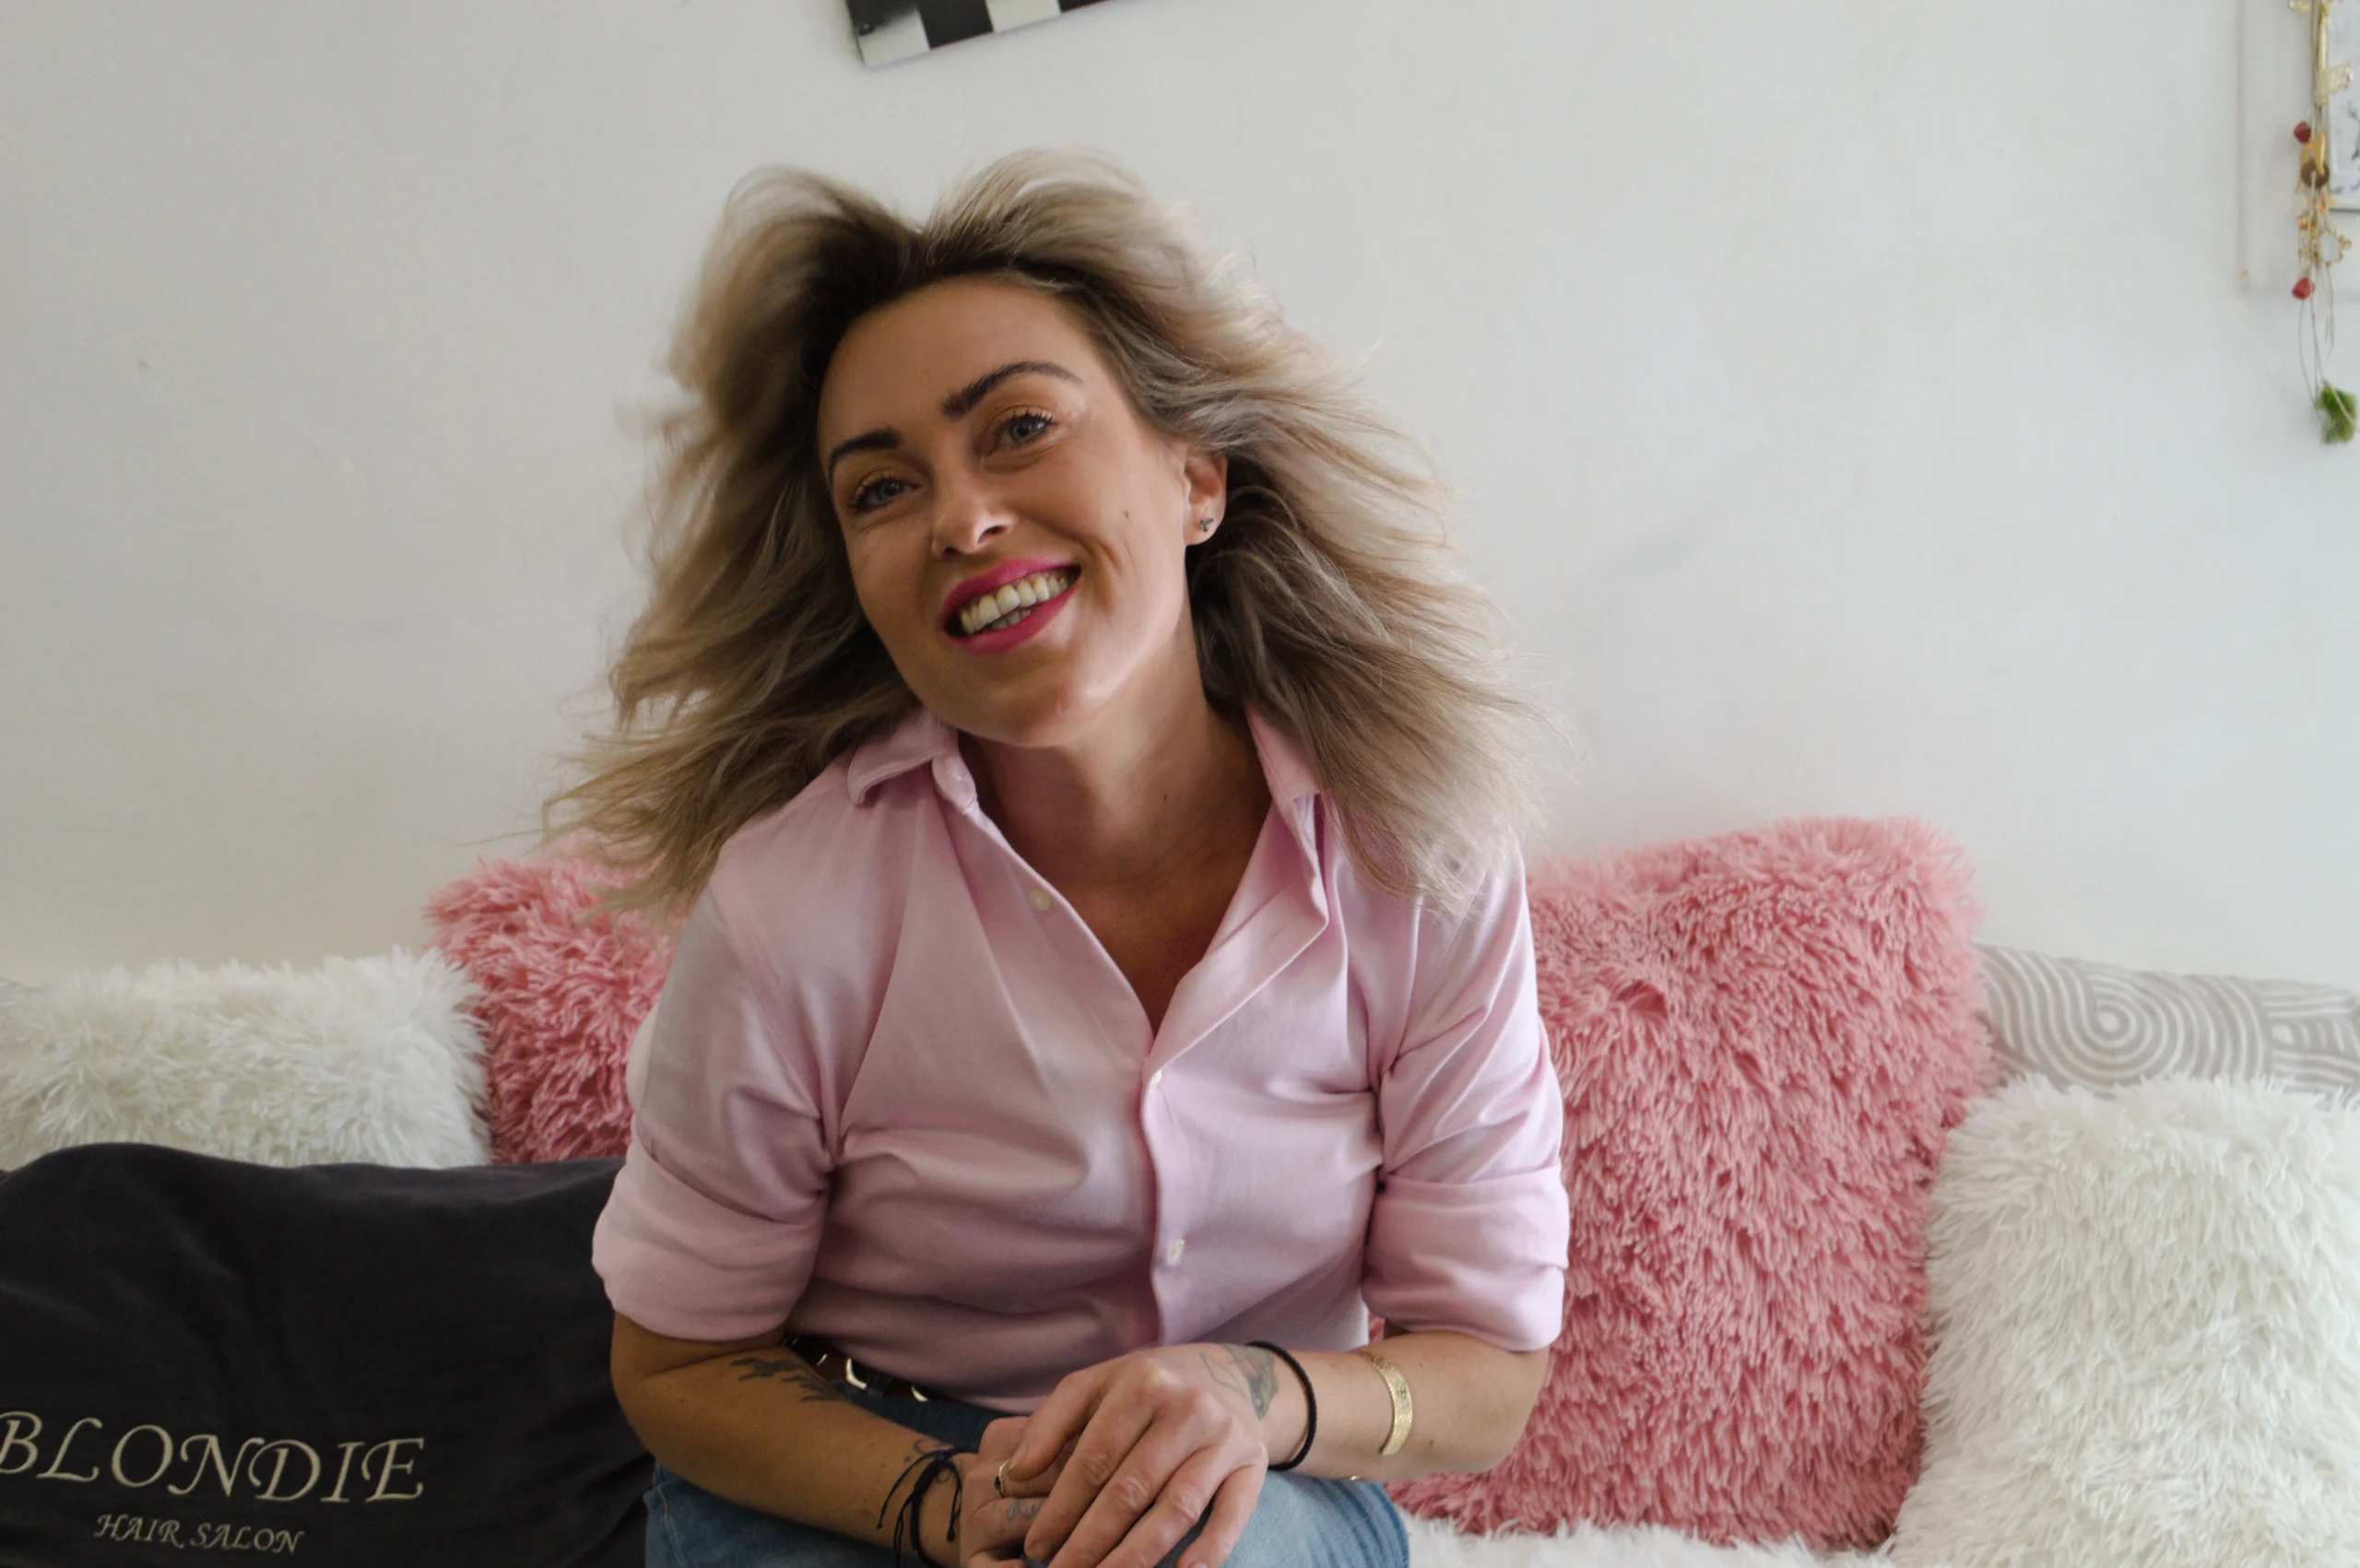 Blondie Hair Salon: Η κορυφαία hairstylist Άννα Μοσκάλοβα￼